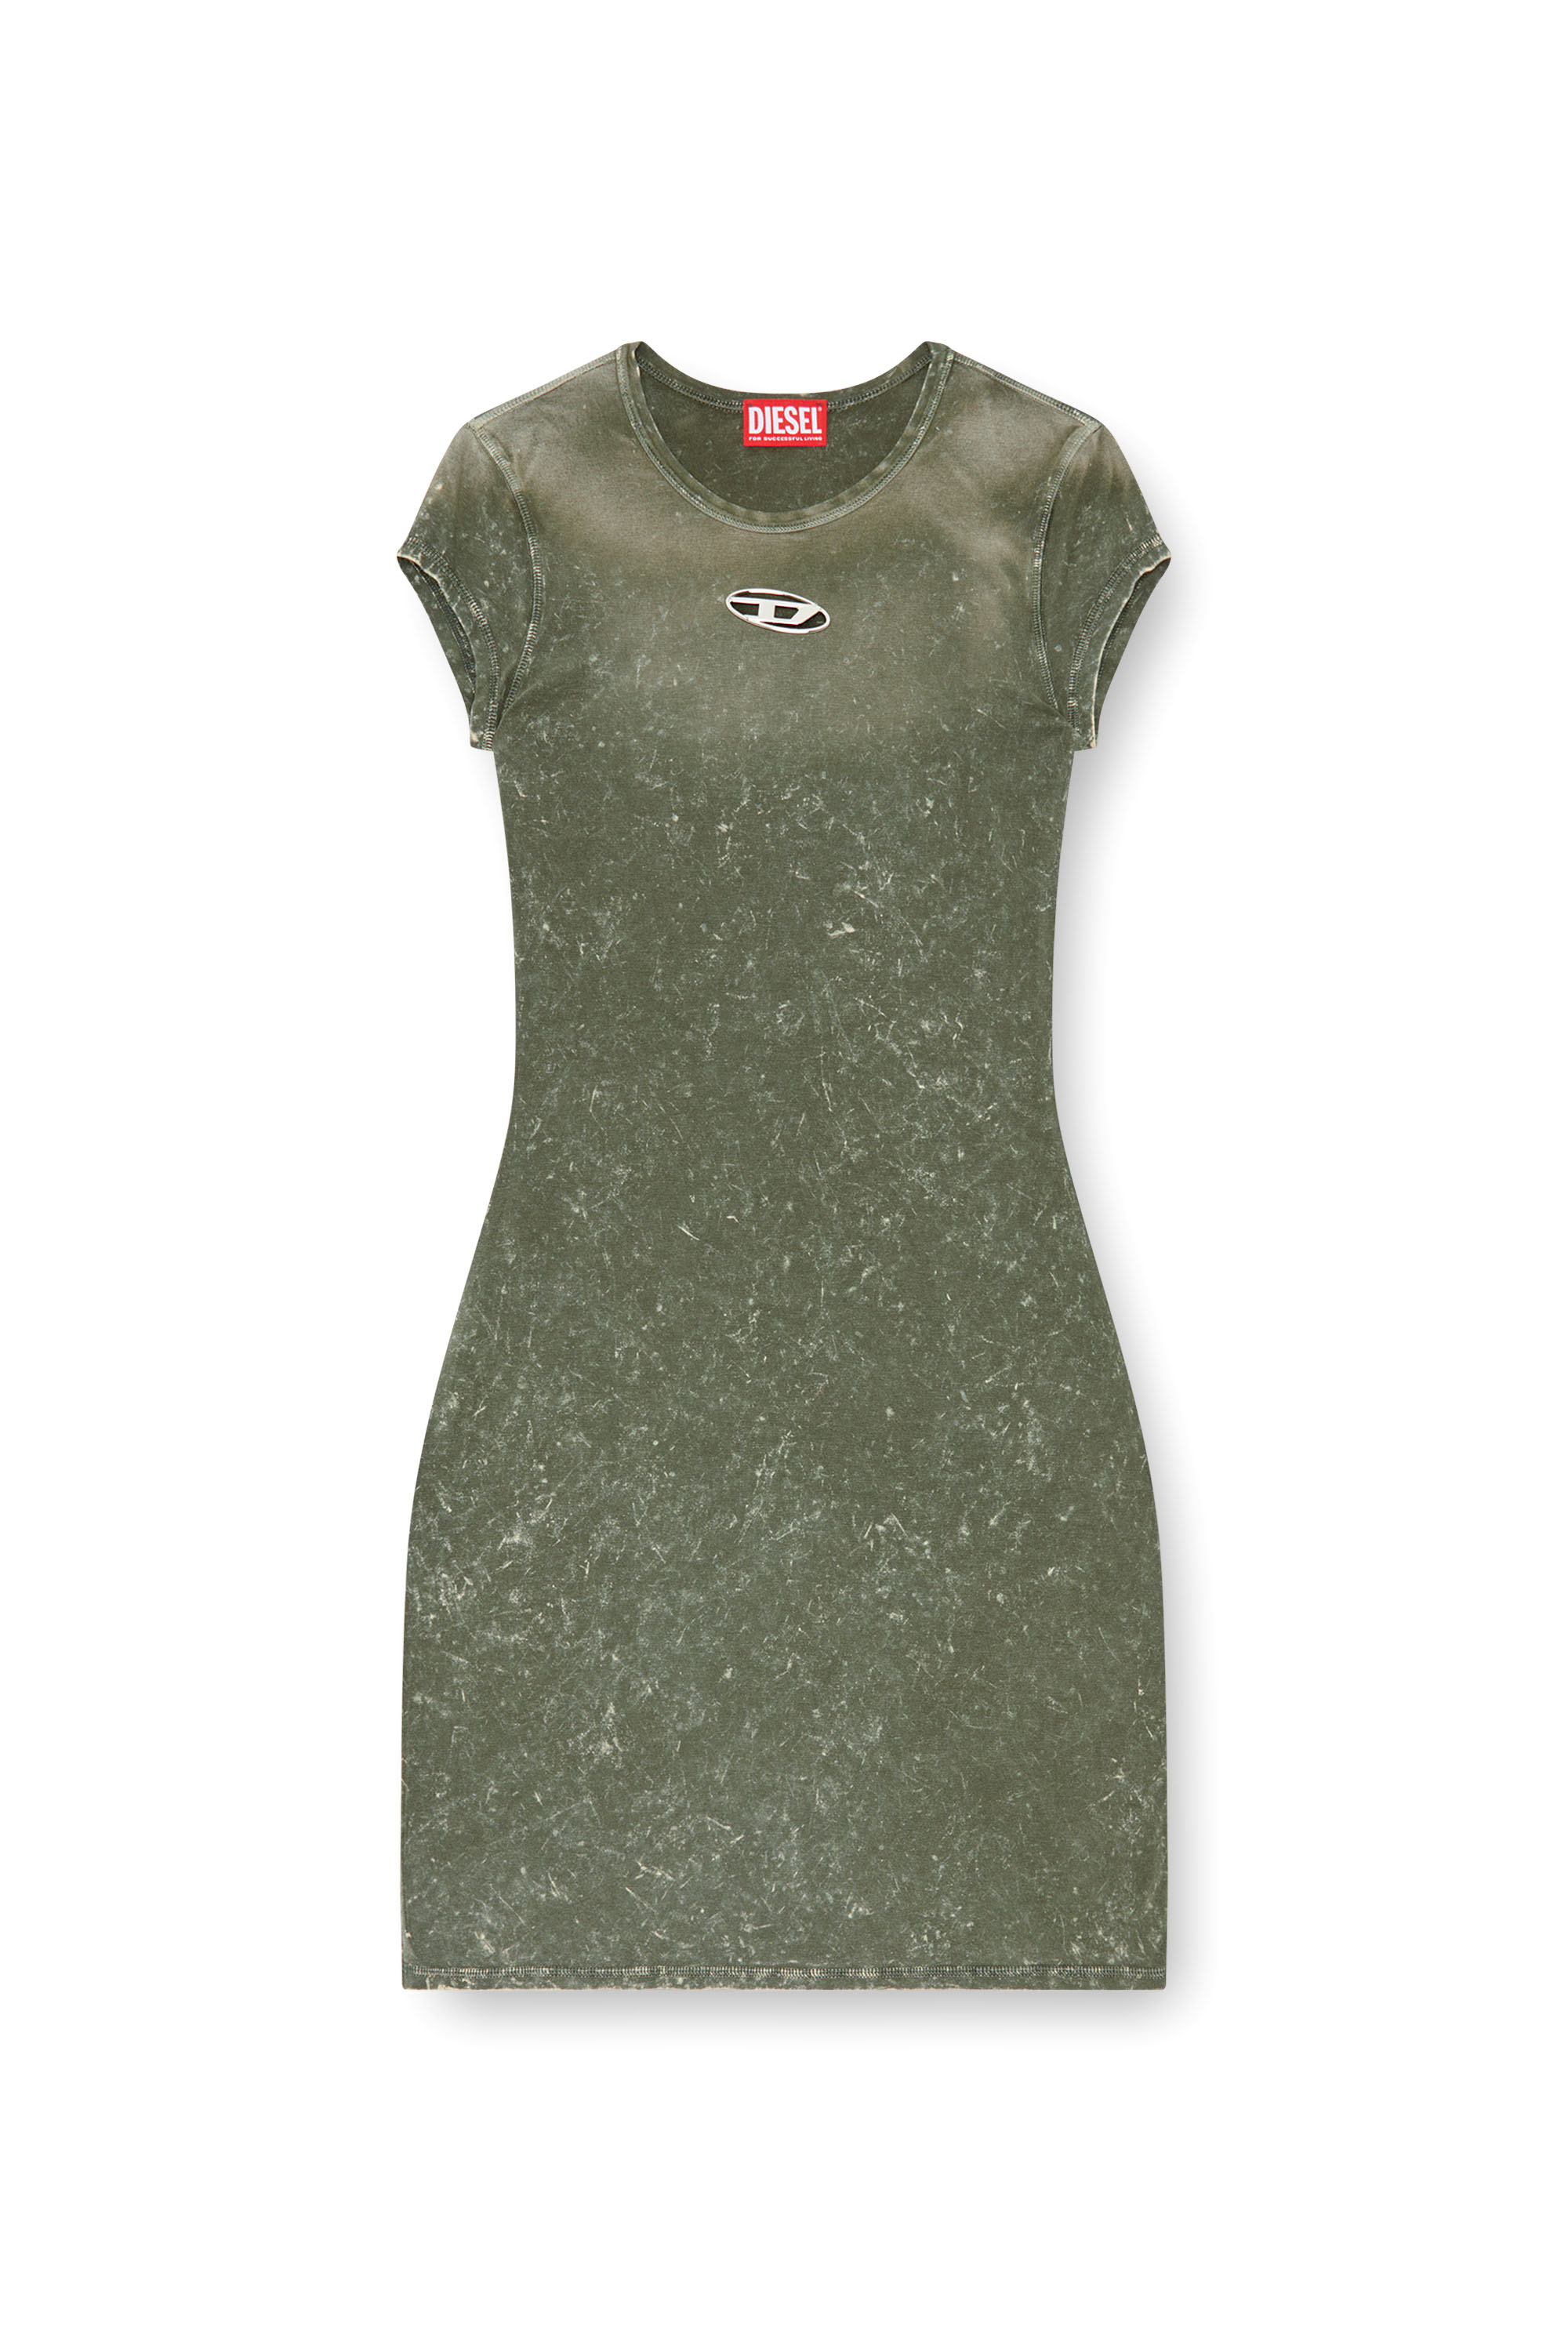 Diesel - D-ANGIEL-P1, Mujer Vestido corto de tejido elástico tipo mármol in Verde - Image 3